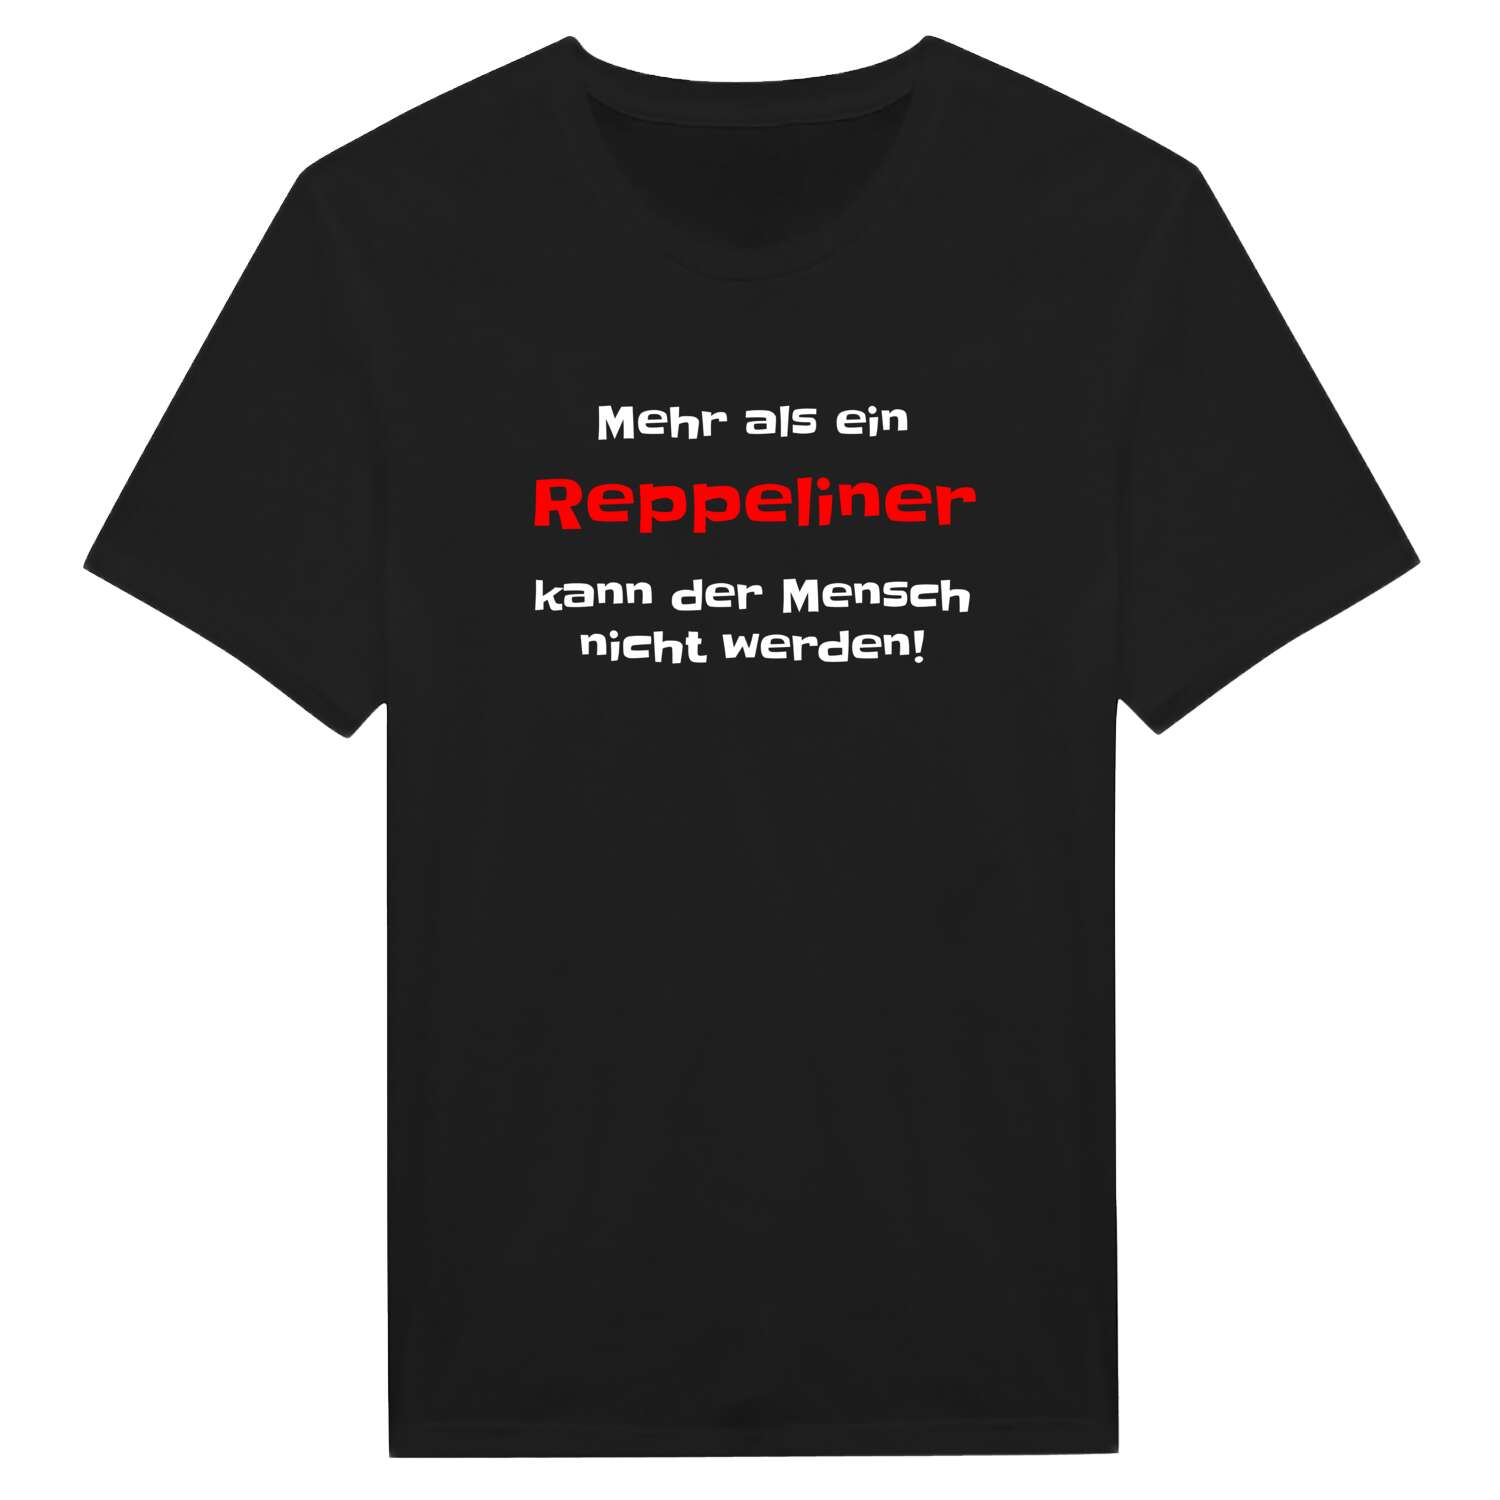 Reppelin T-Shirt »Mehr als ein«